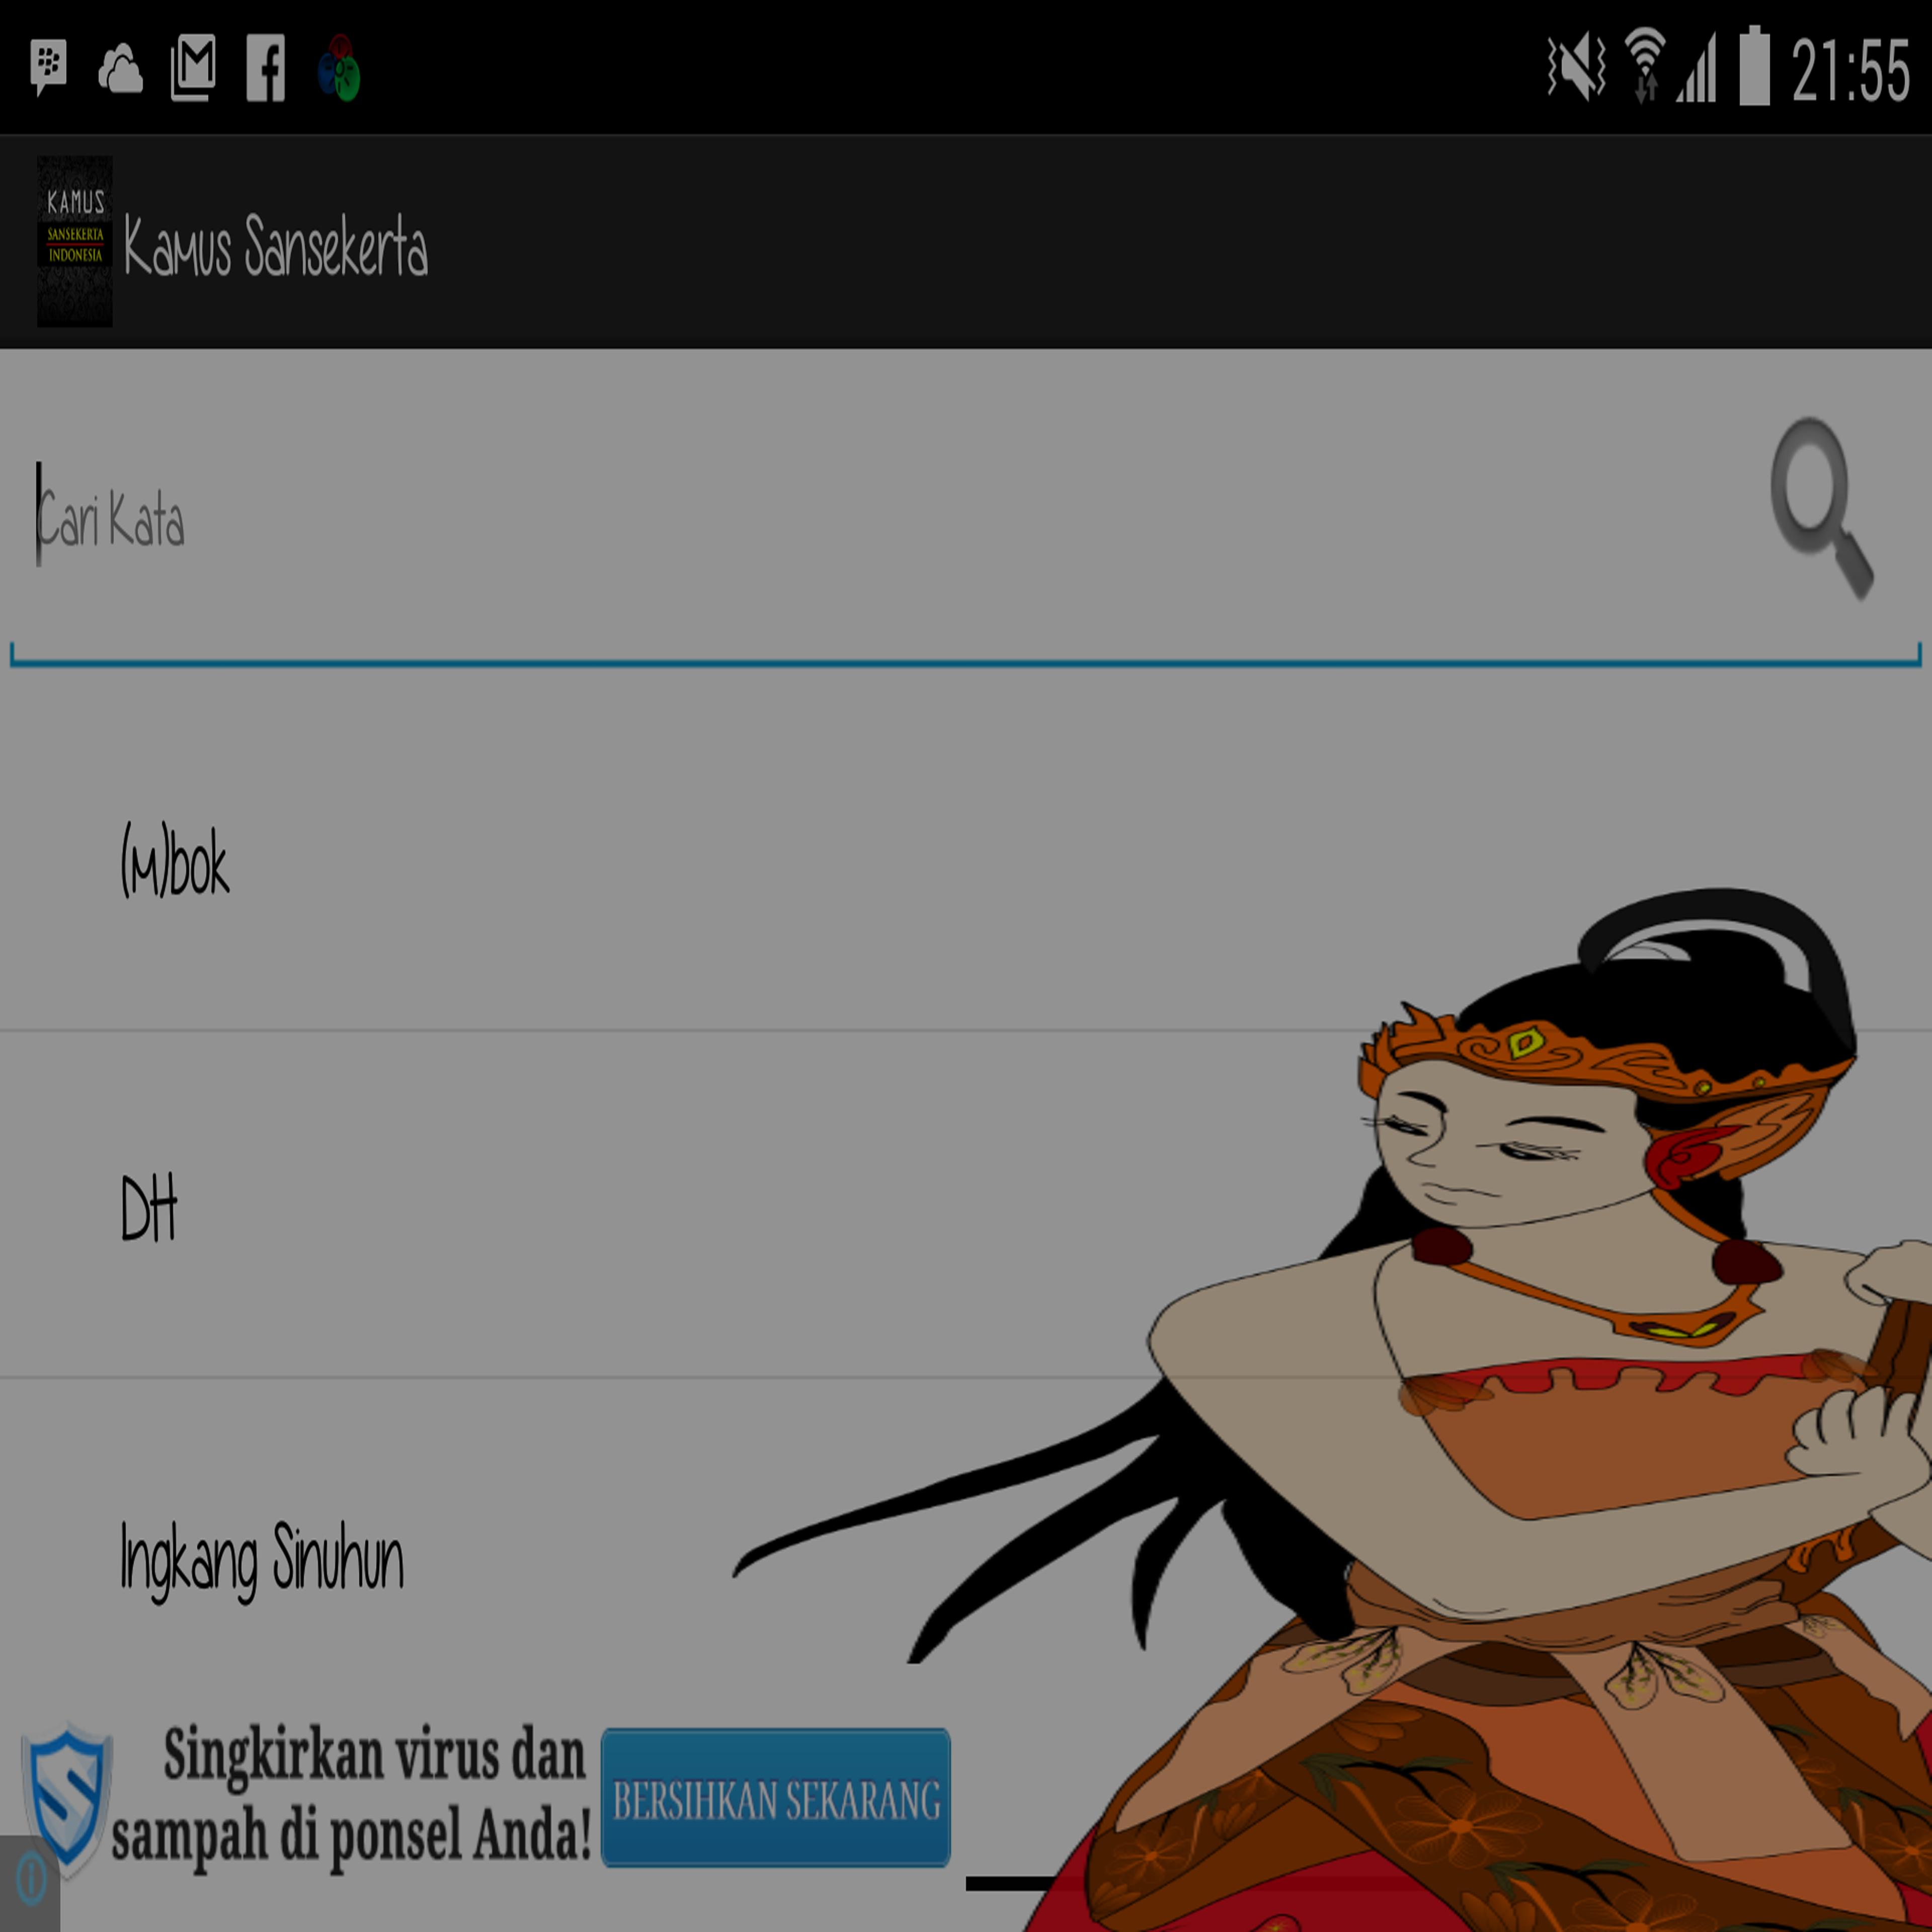 Kamus Sansekerta Jawa Kuno for Android APK Download